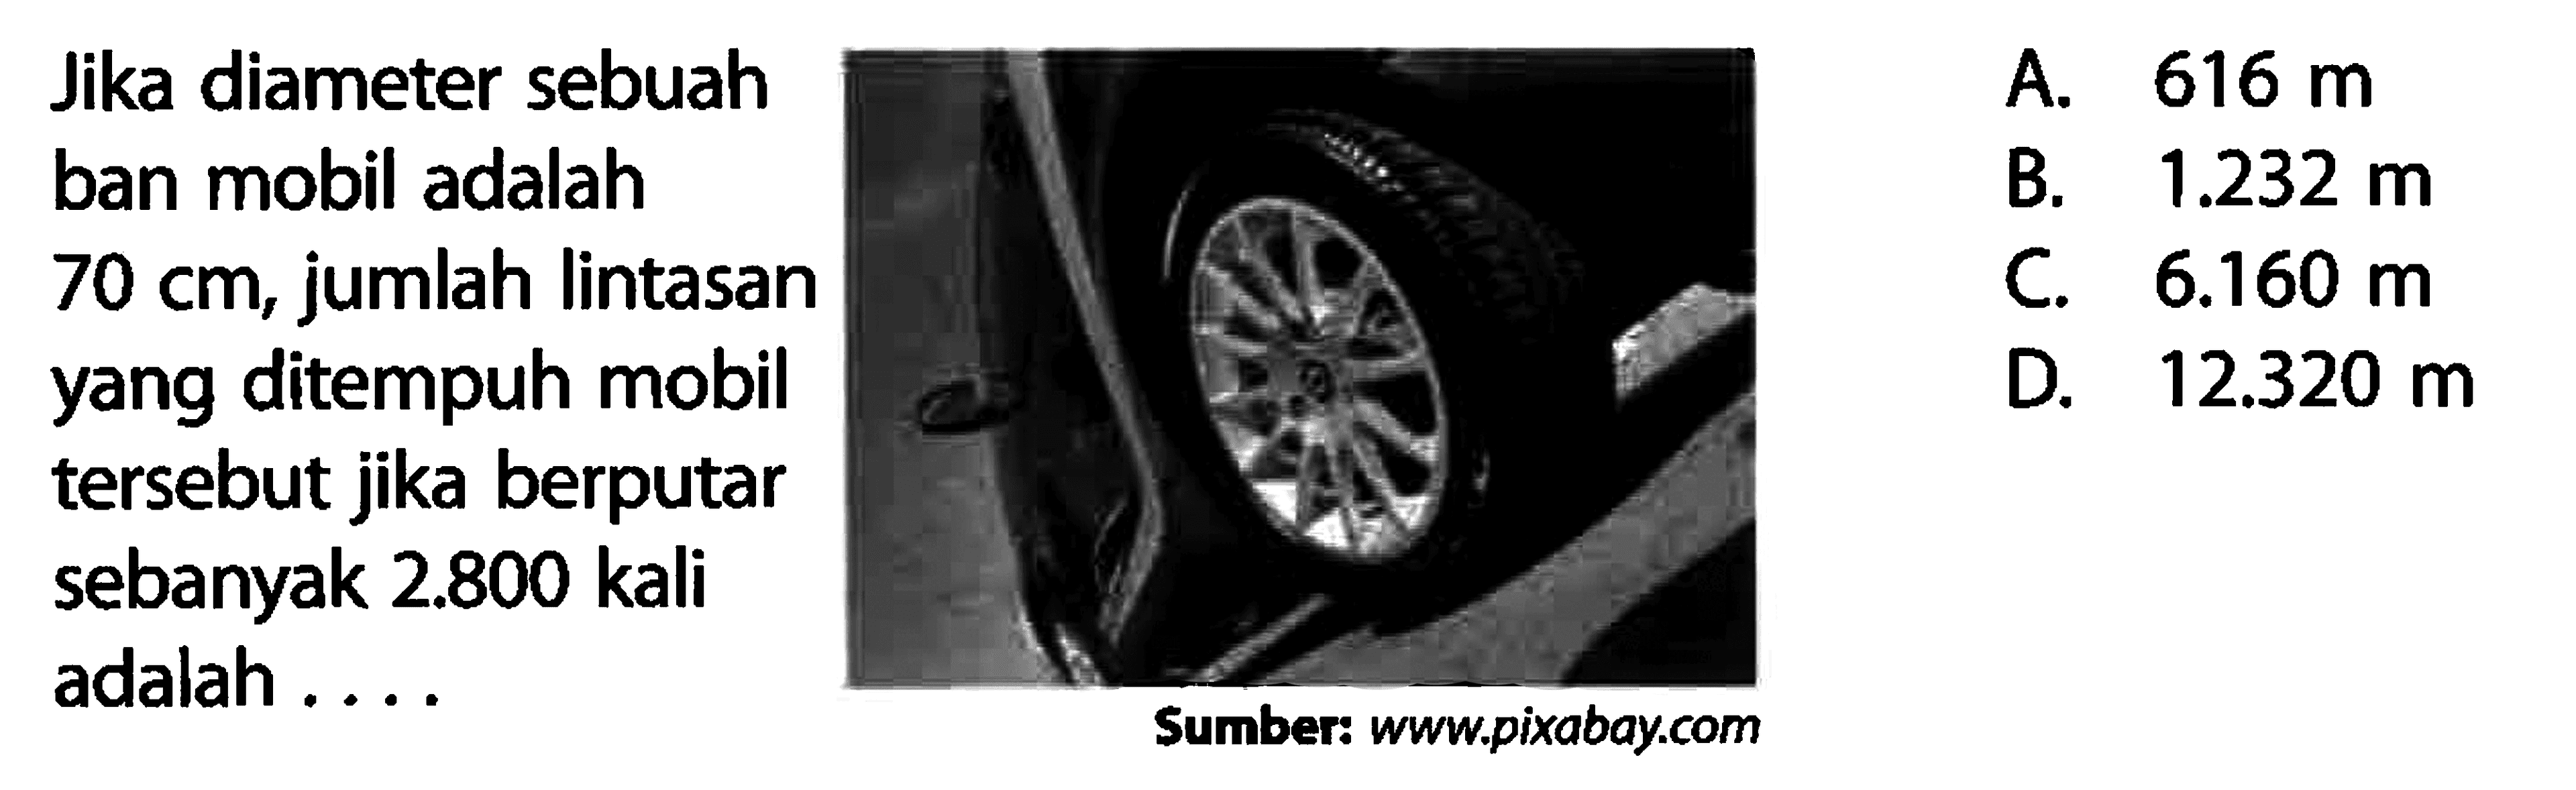 Jika diameter sebuahban mobil adalah70 cm, jumlah lintasanyang ditempuh mobiltersebut jika berputarsebanyak 2.800 kali l adalah... 